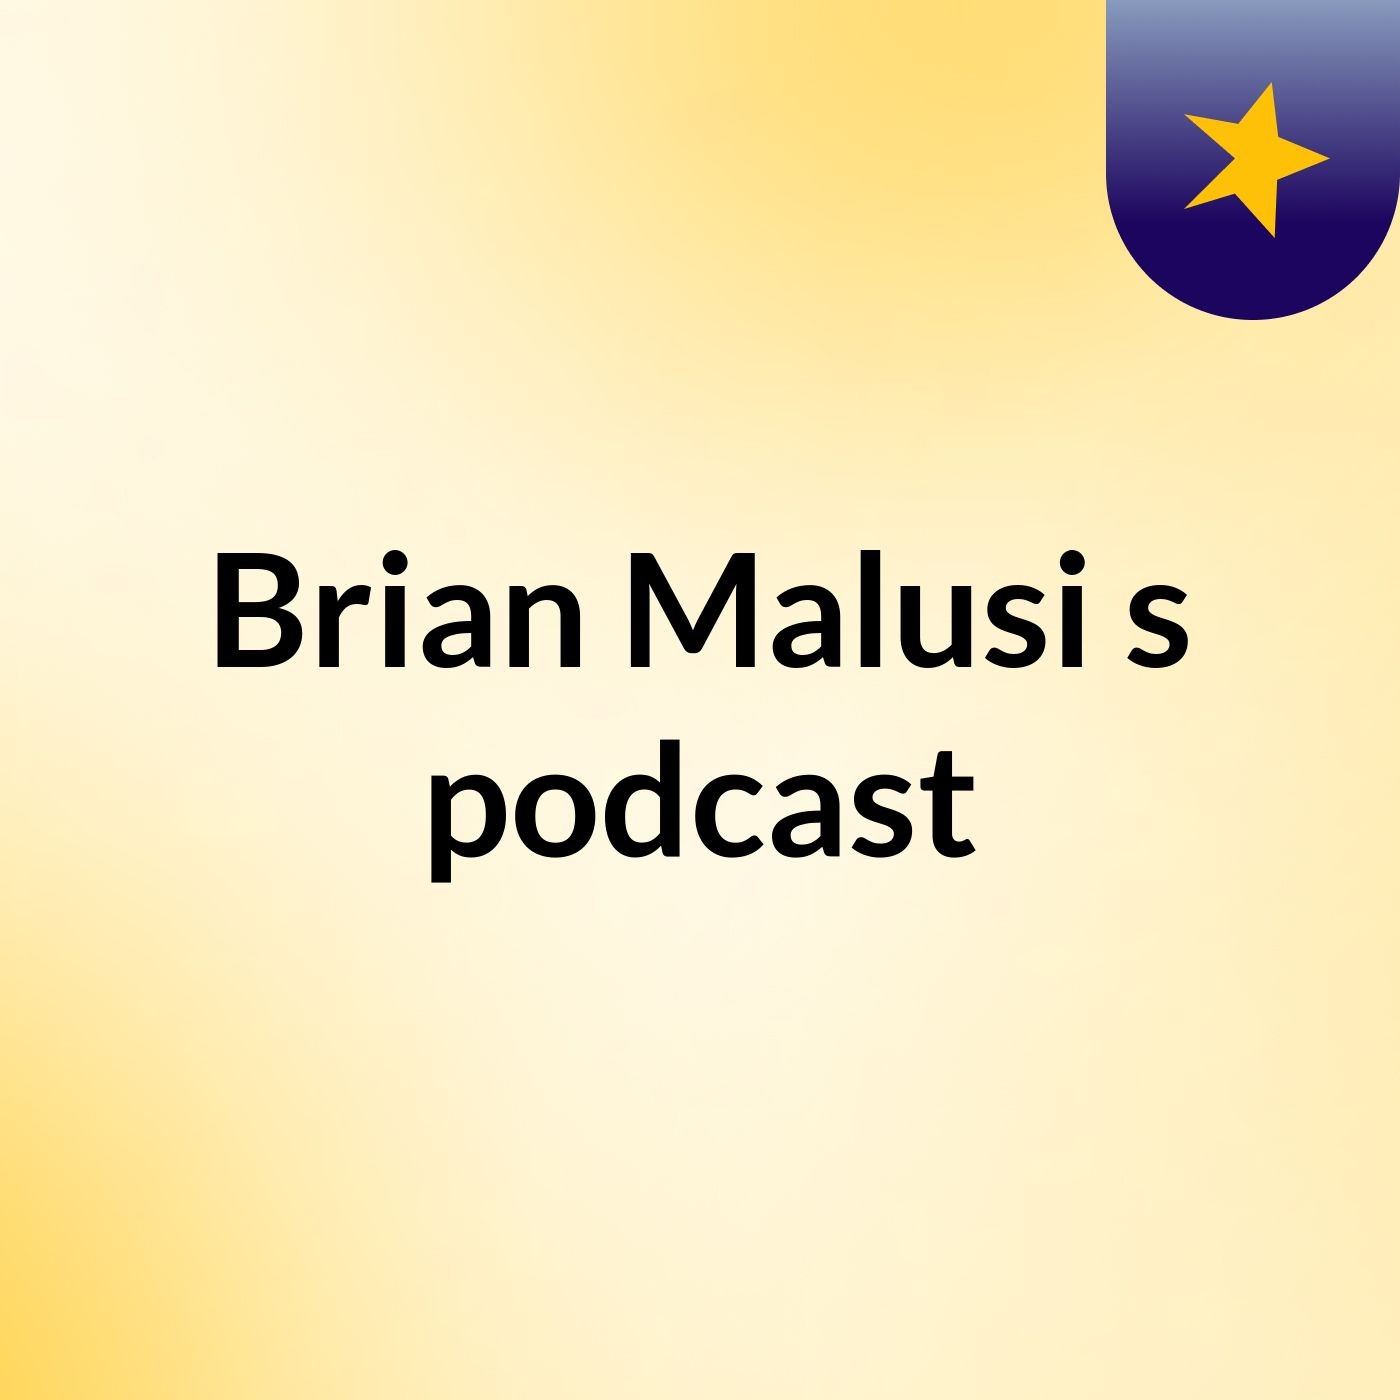 Brian Malusi's podcast